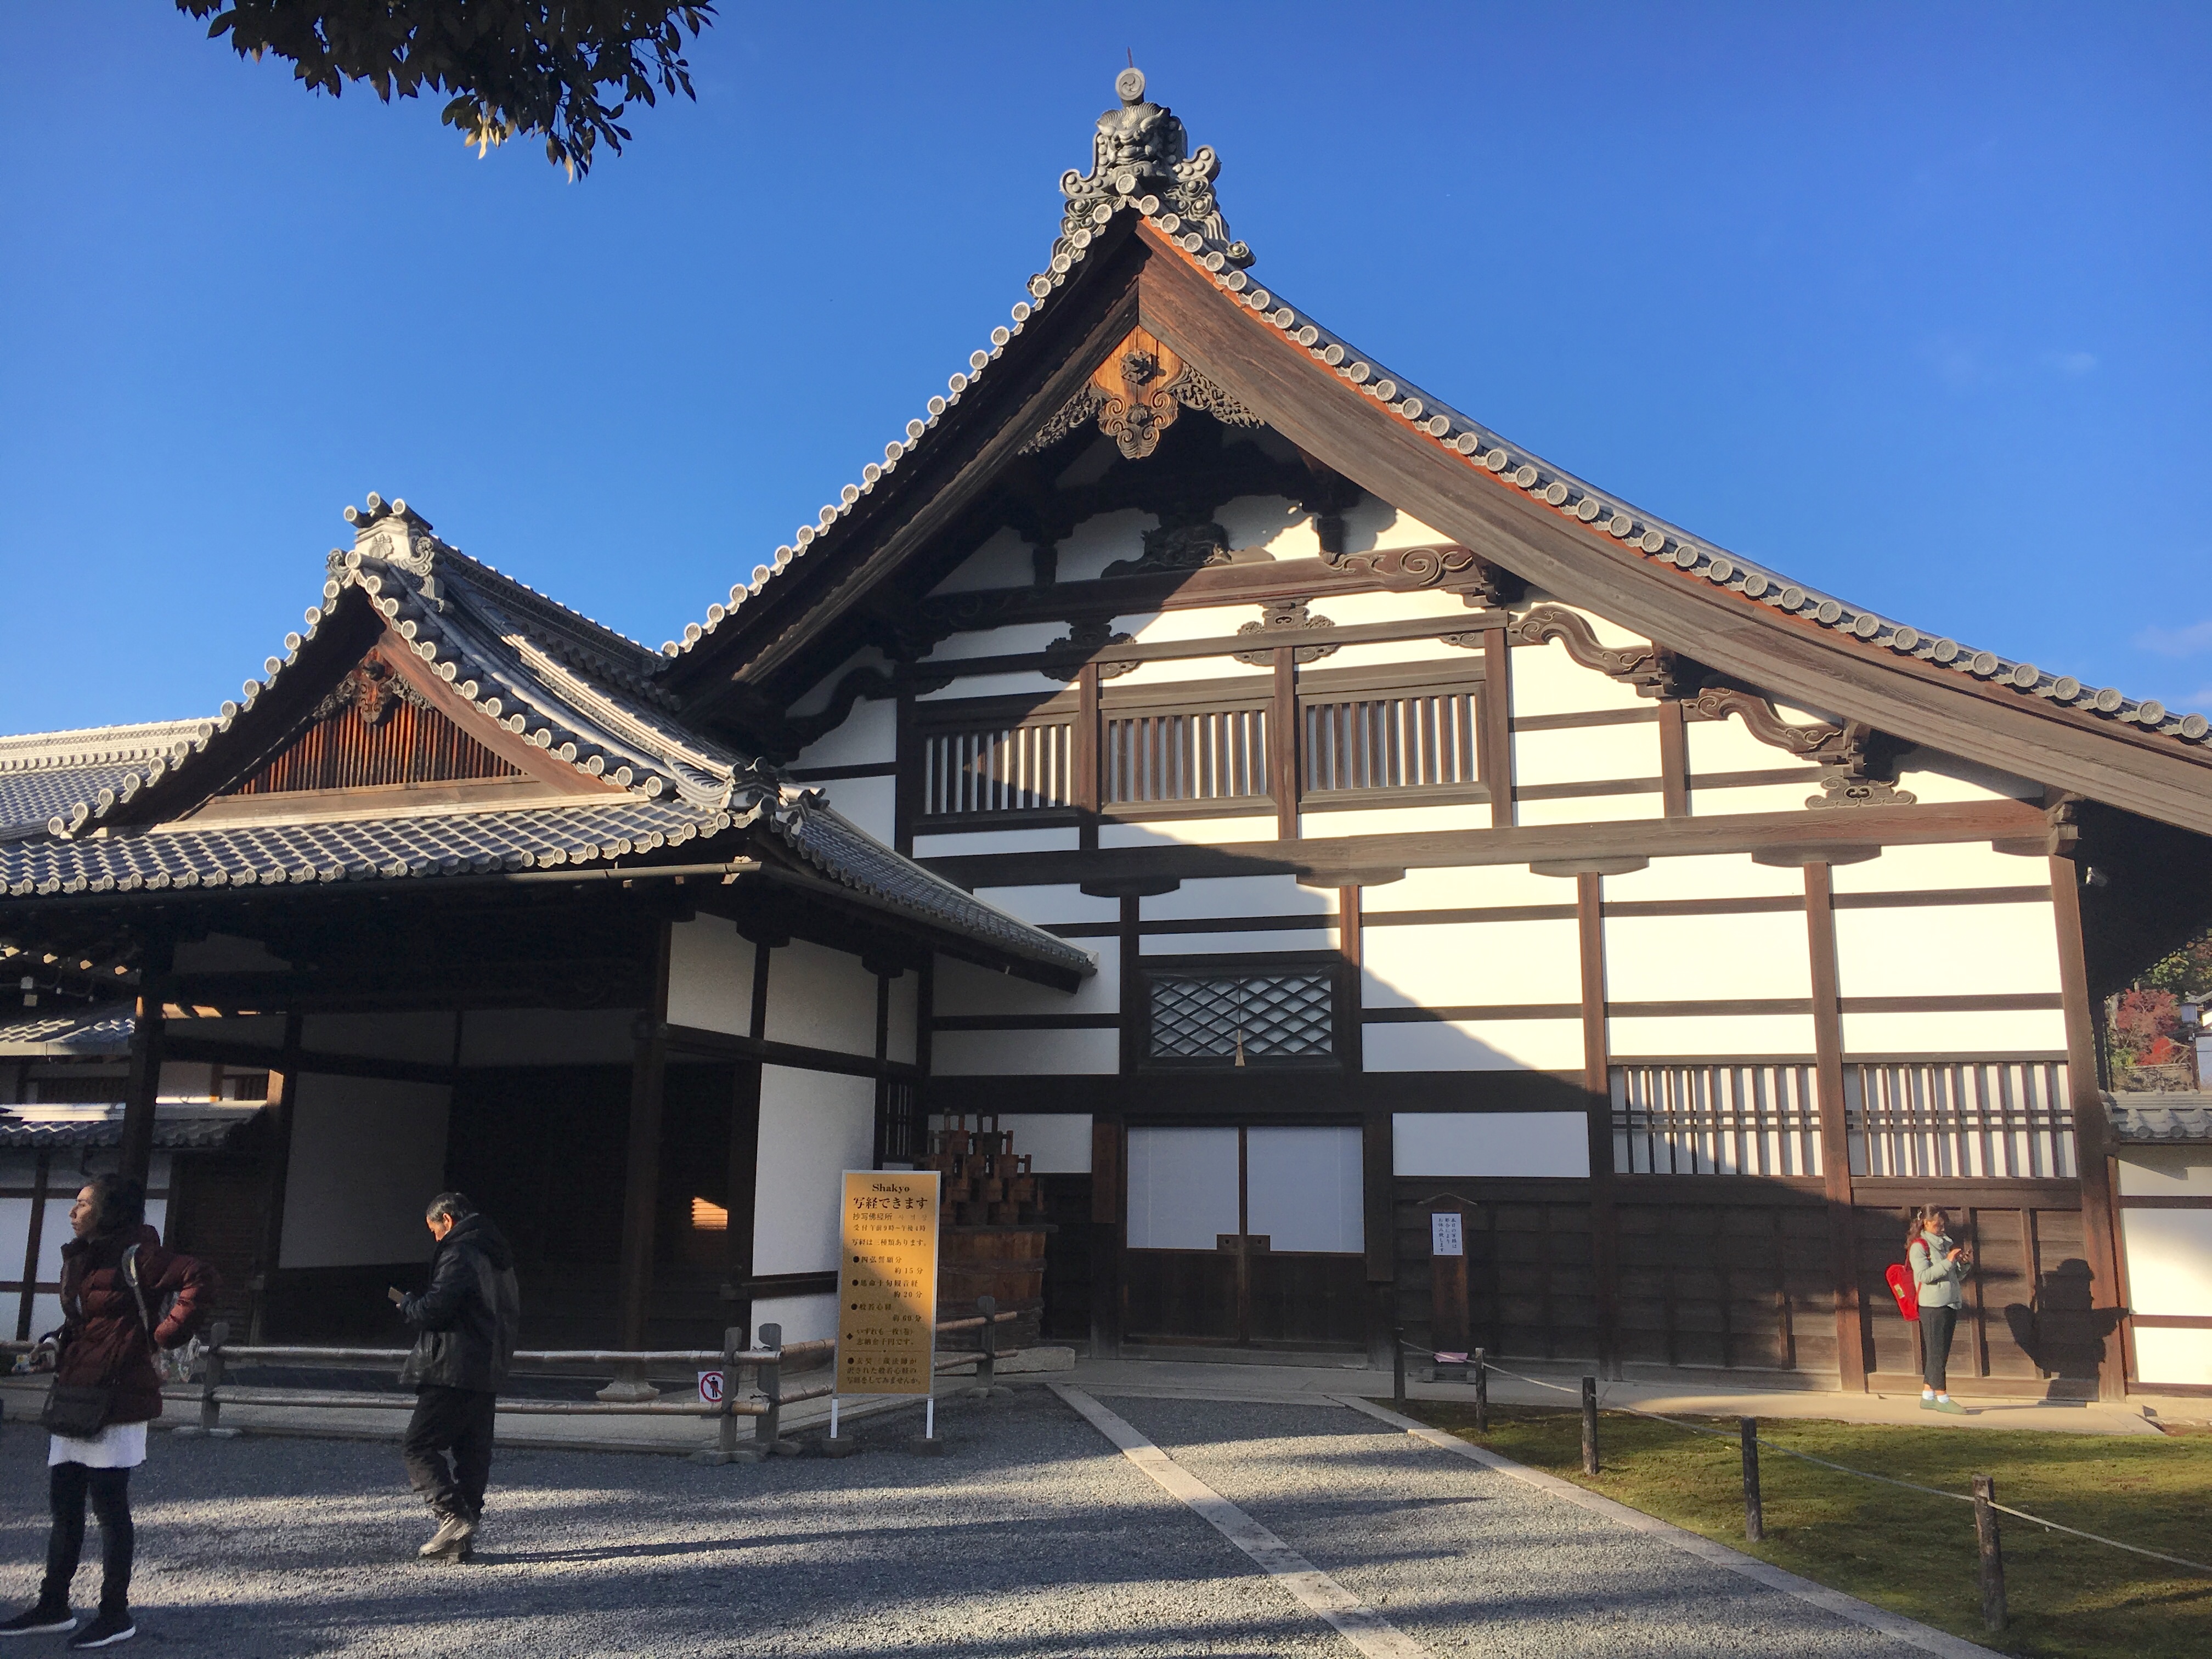 old Japanese building near Kinkaku-ji